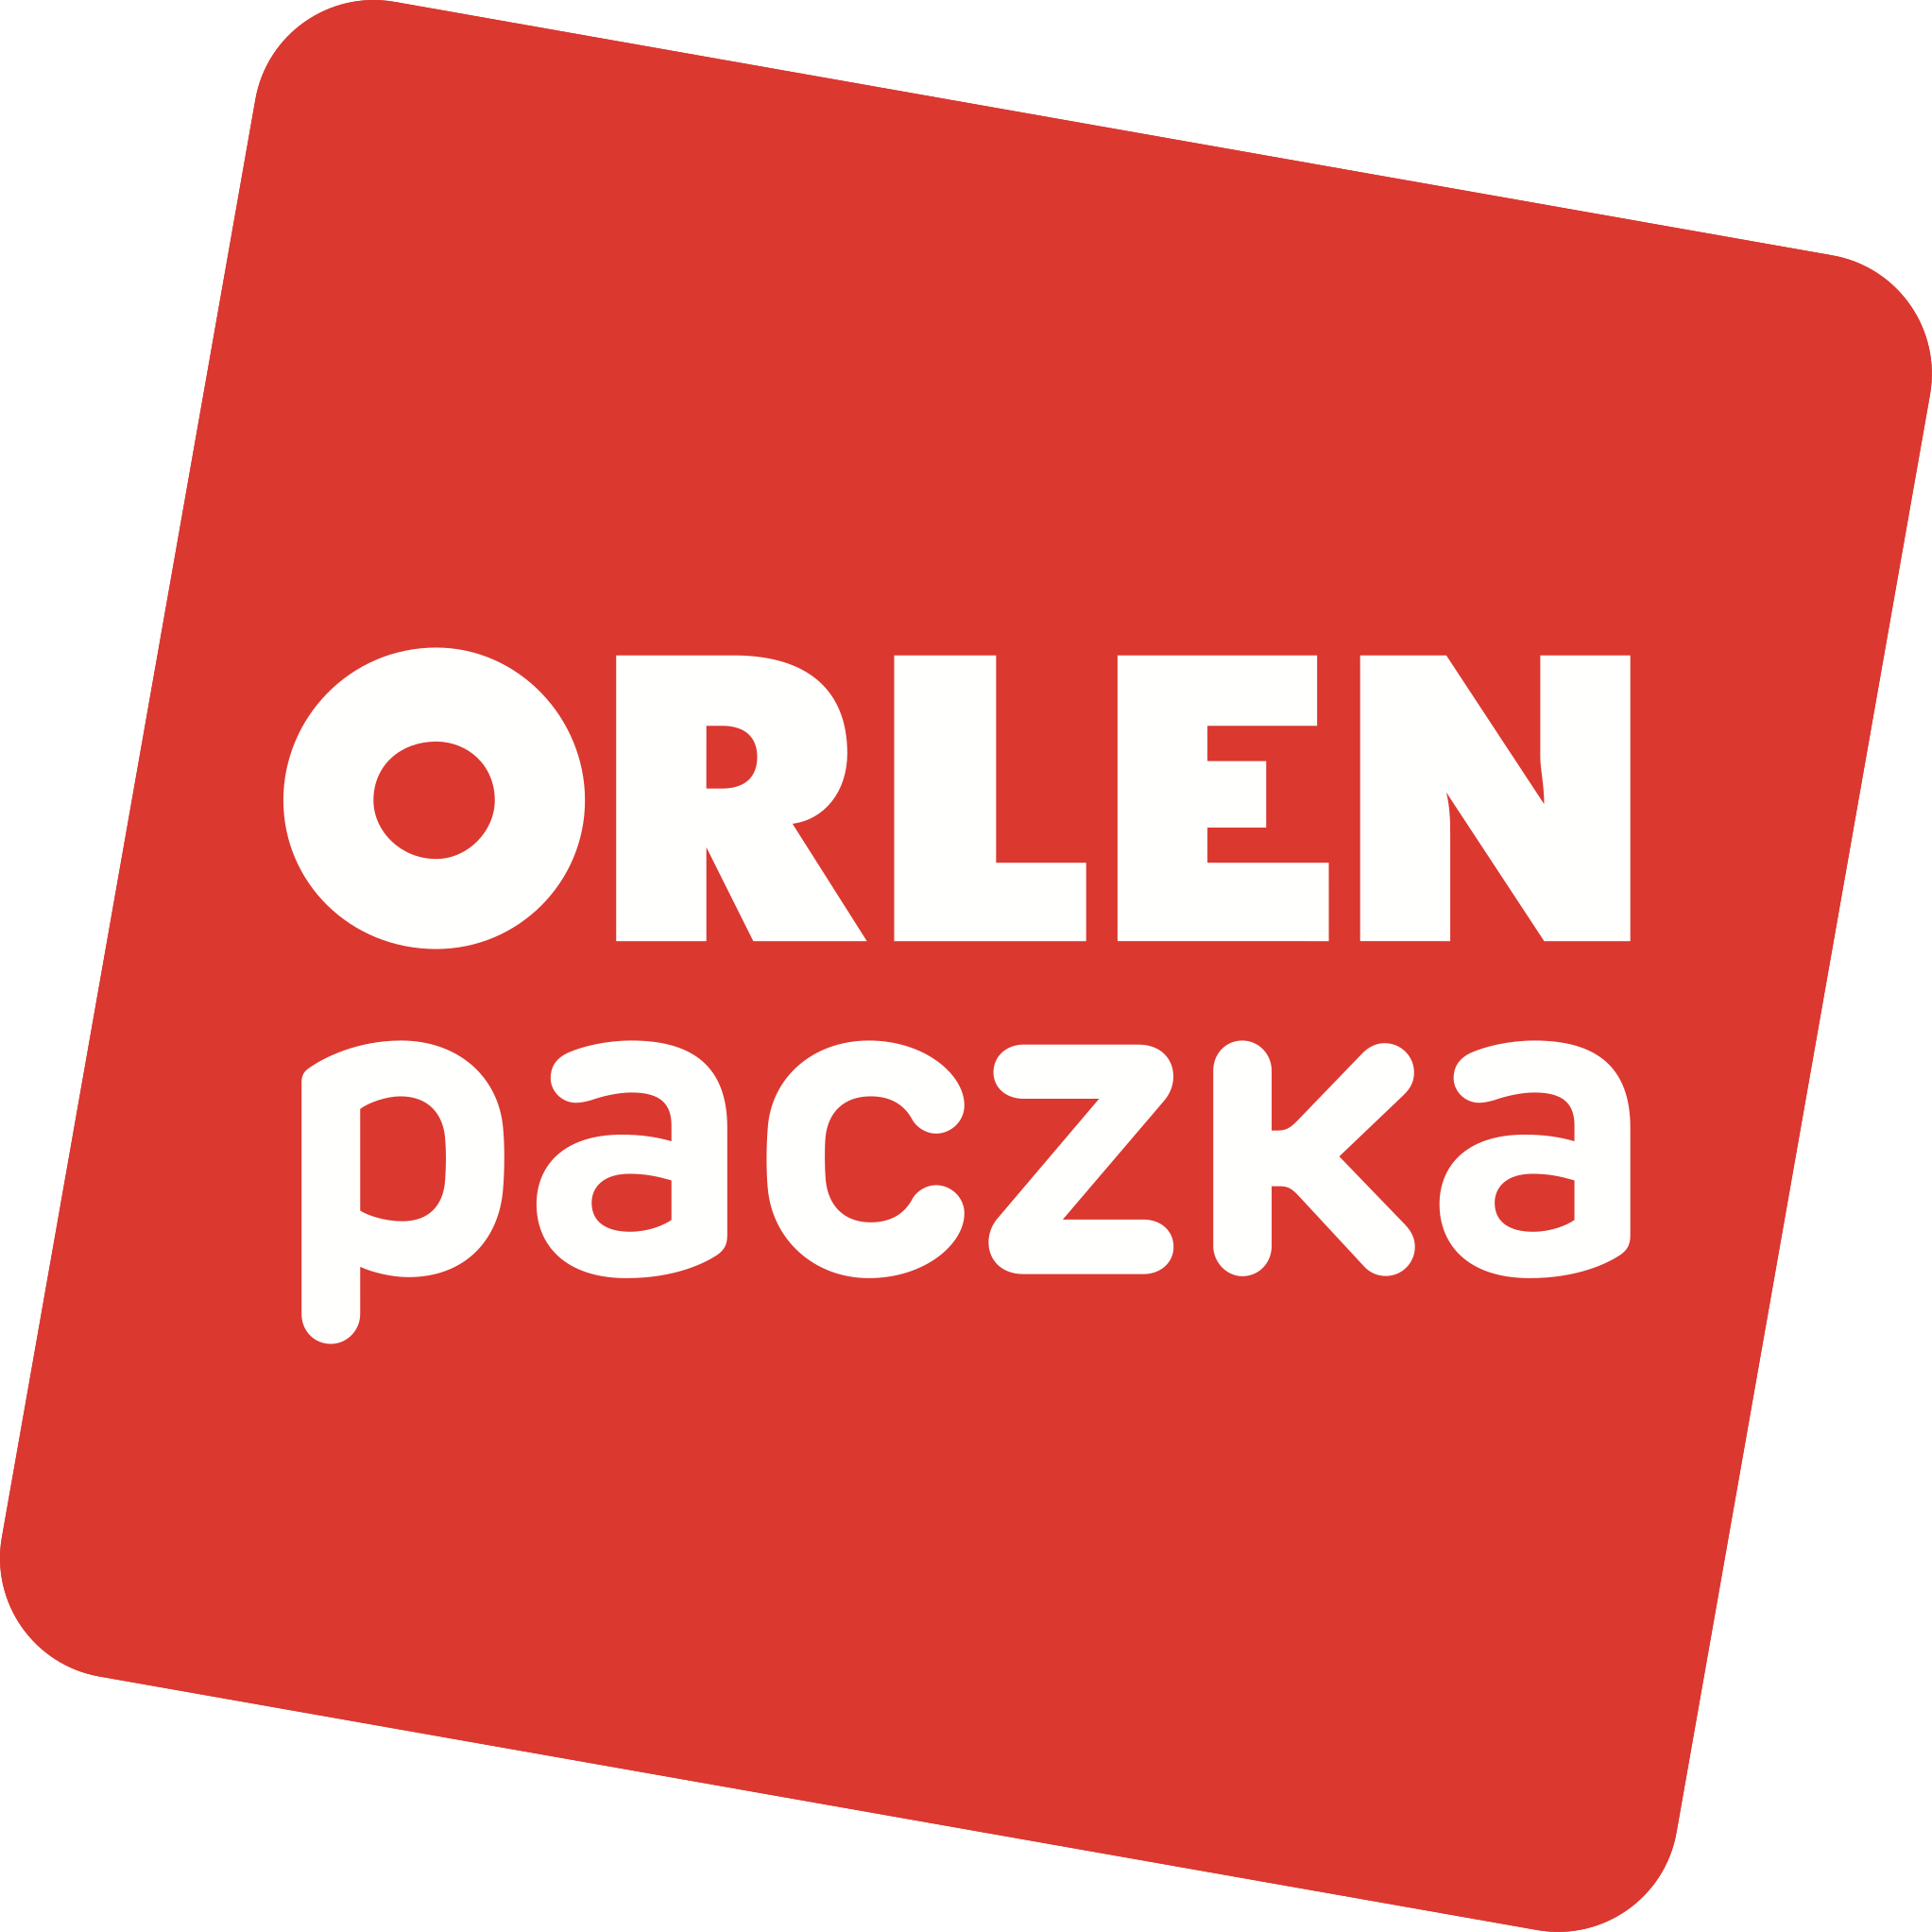 Orlen_paczka_logo-svg(1).png